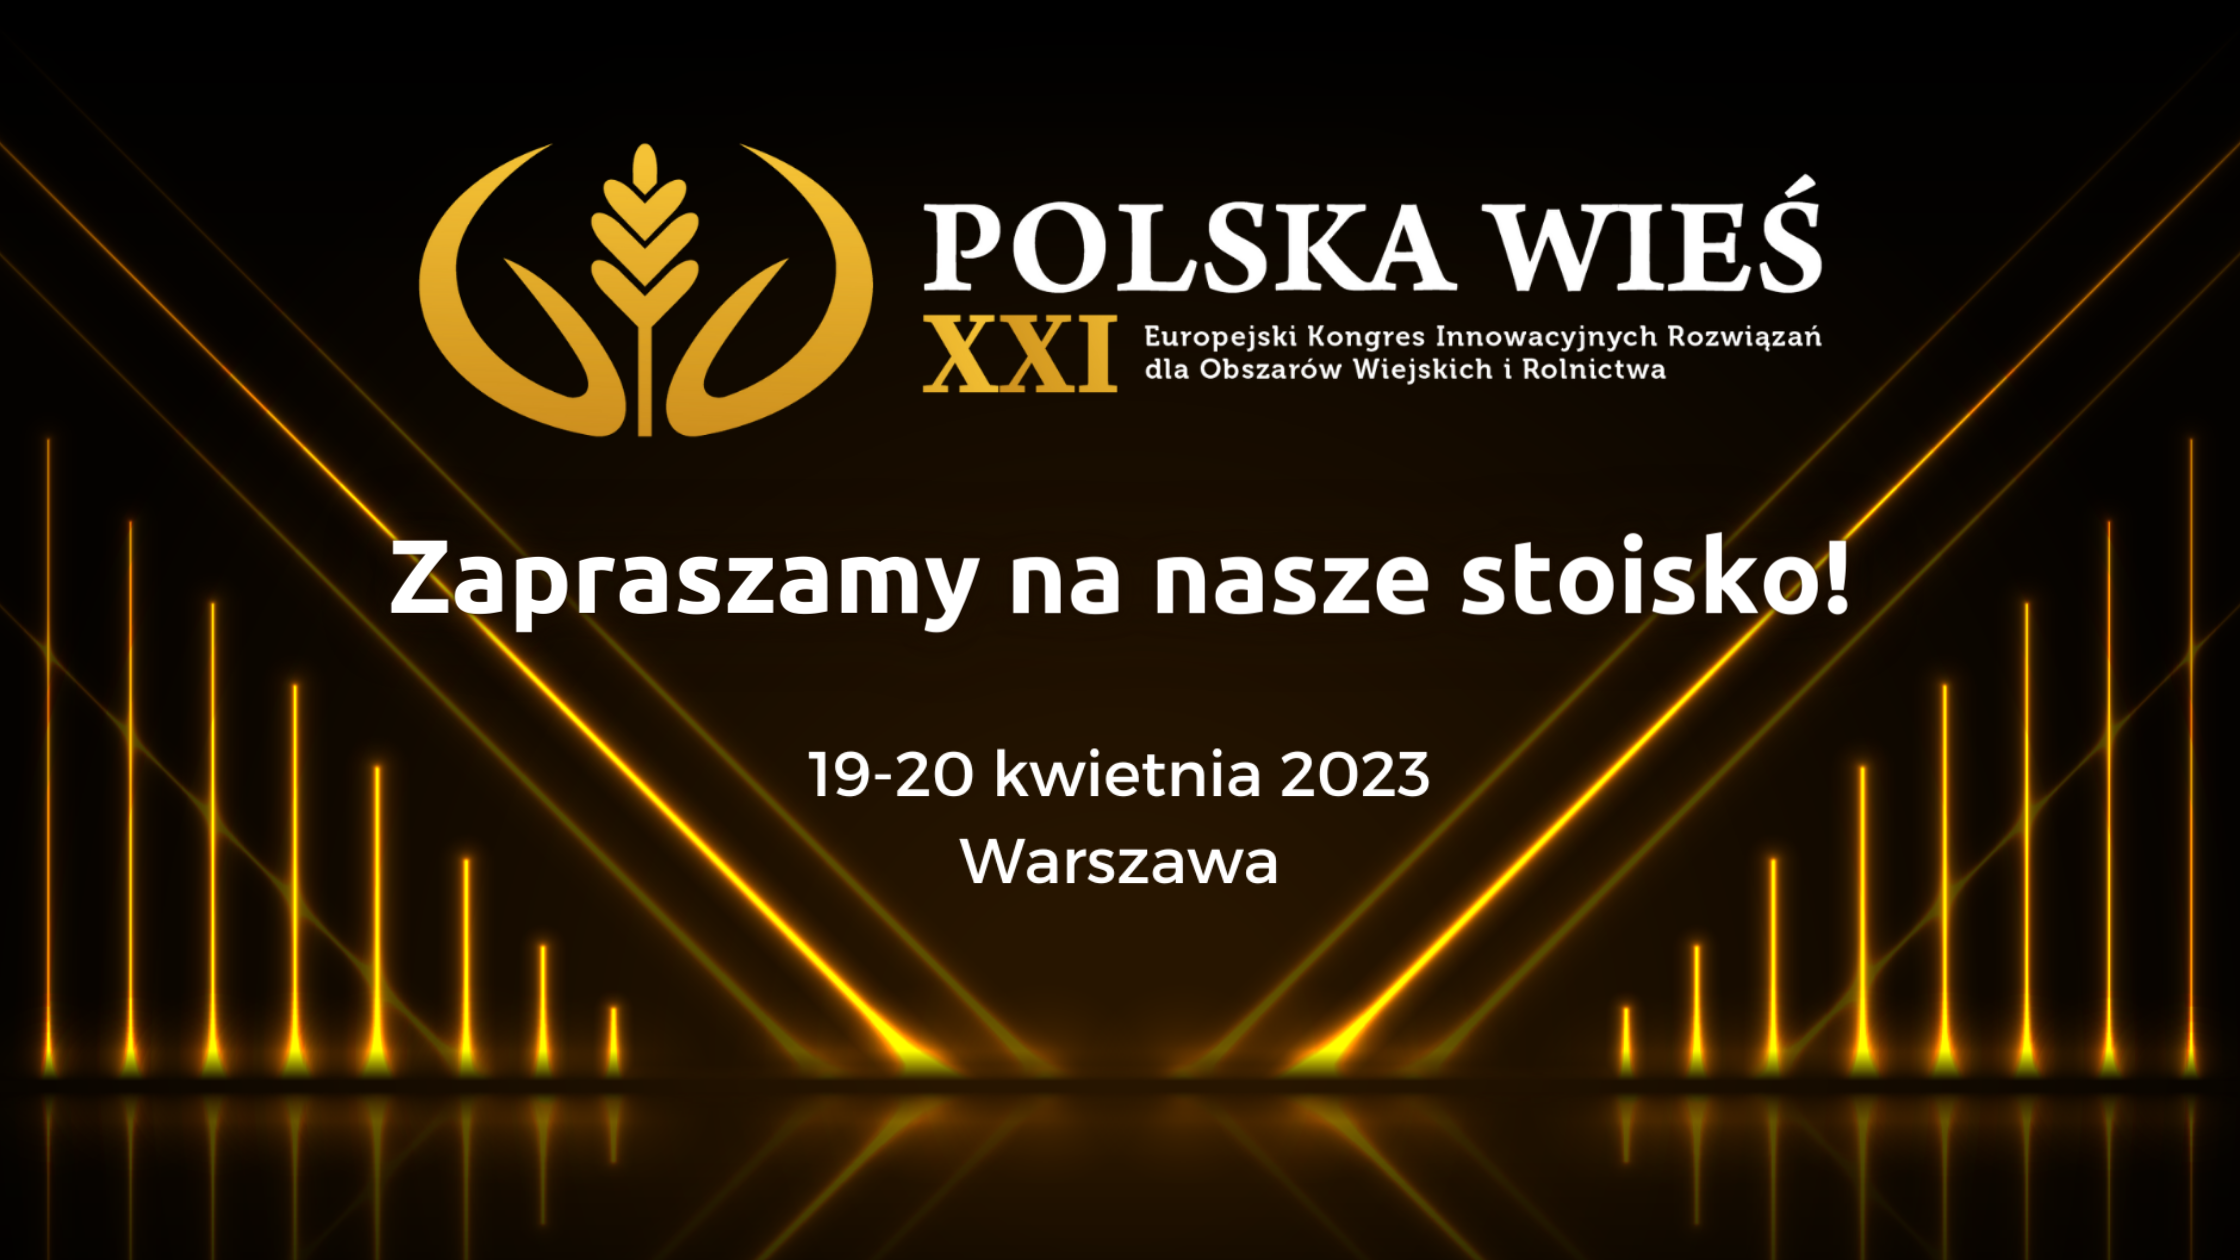 Kongres Polska Wieś XXI